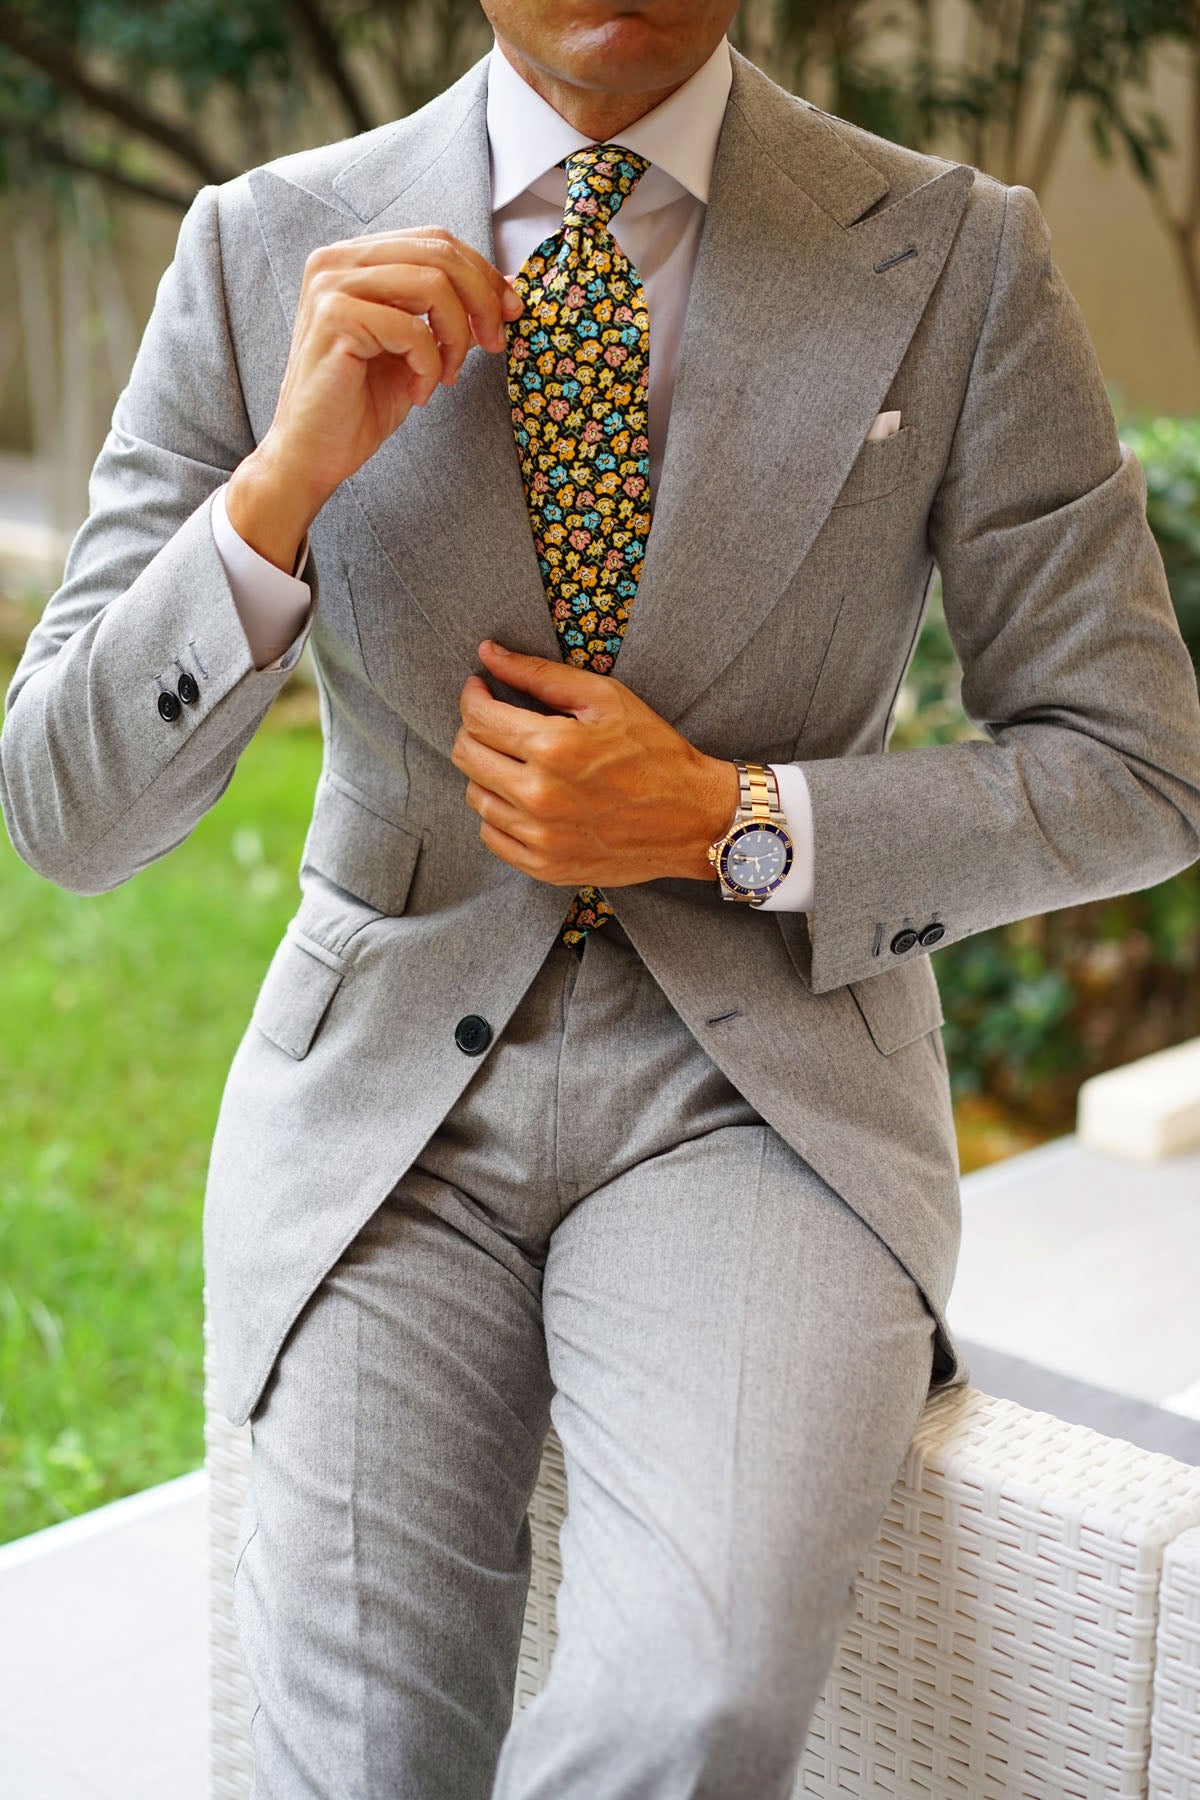 Huelva Yellow Floral Necktie | Flower Tie | Black Pattern Ties for Men ...